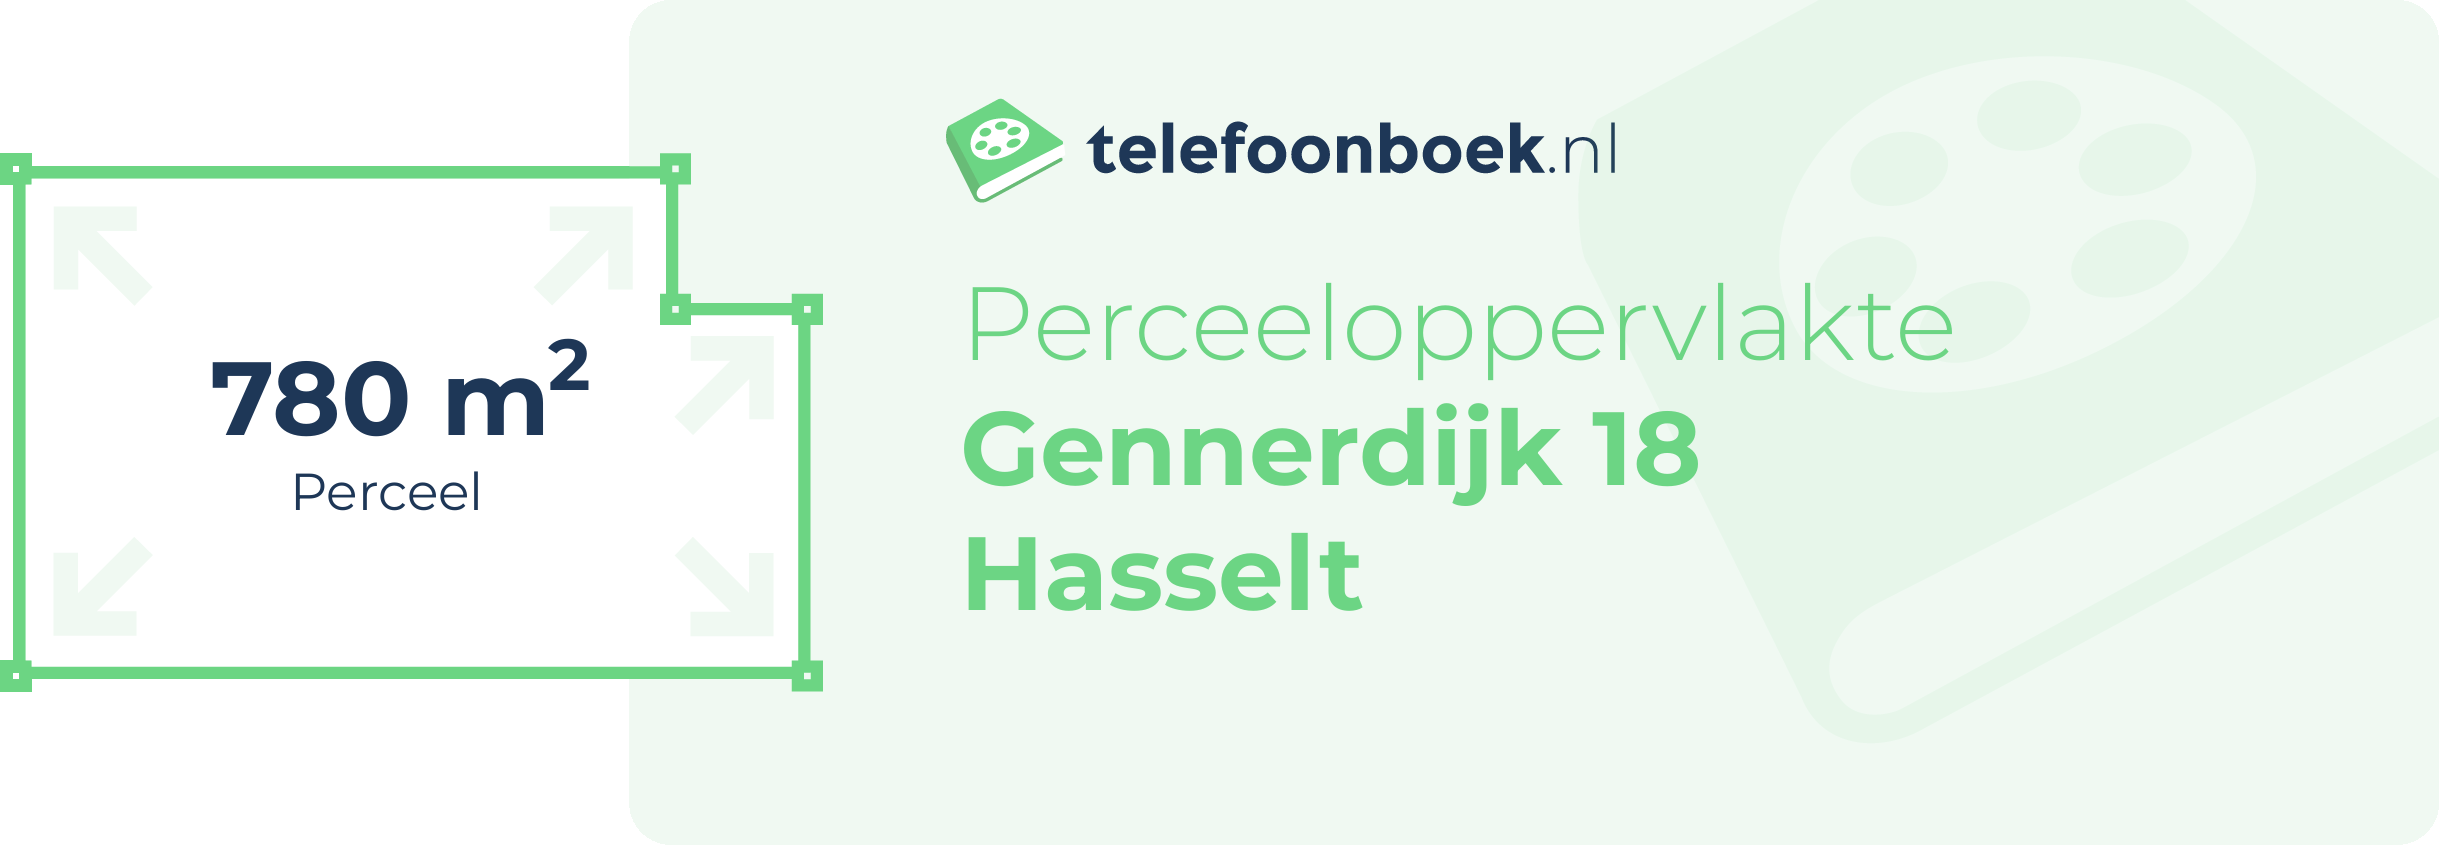 Perceeloppervlakte Gennerdijk 18 Hasselt